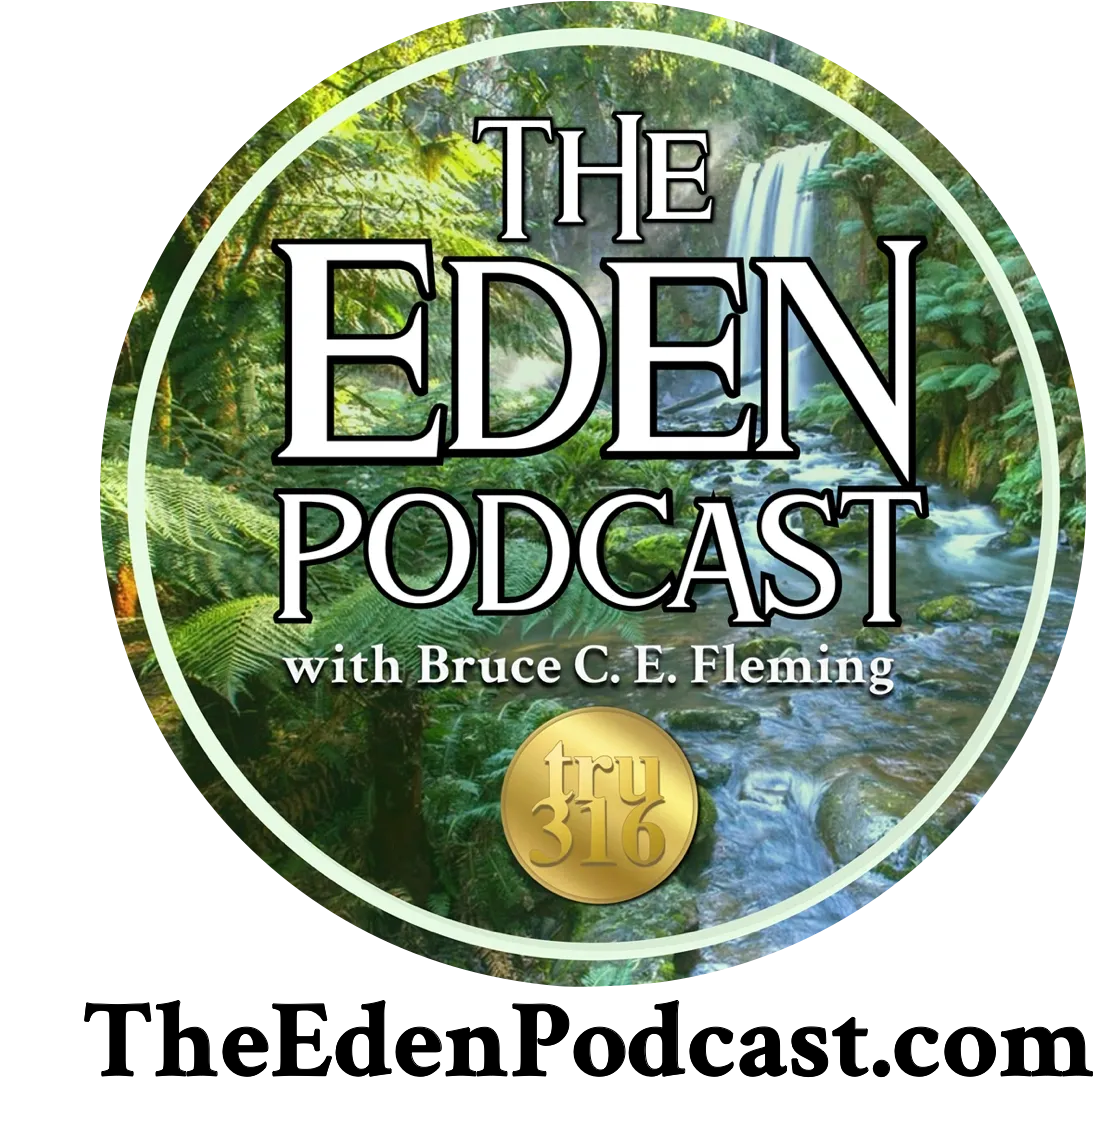 The Eden Podcast.com